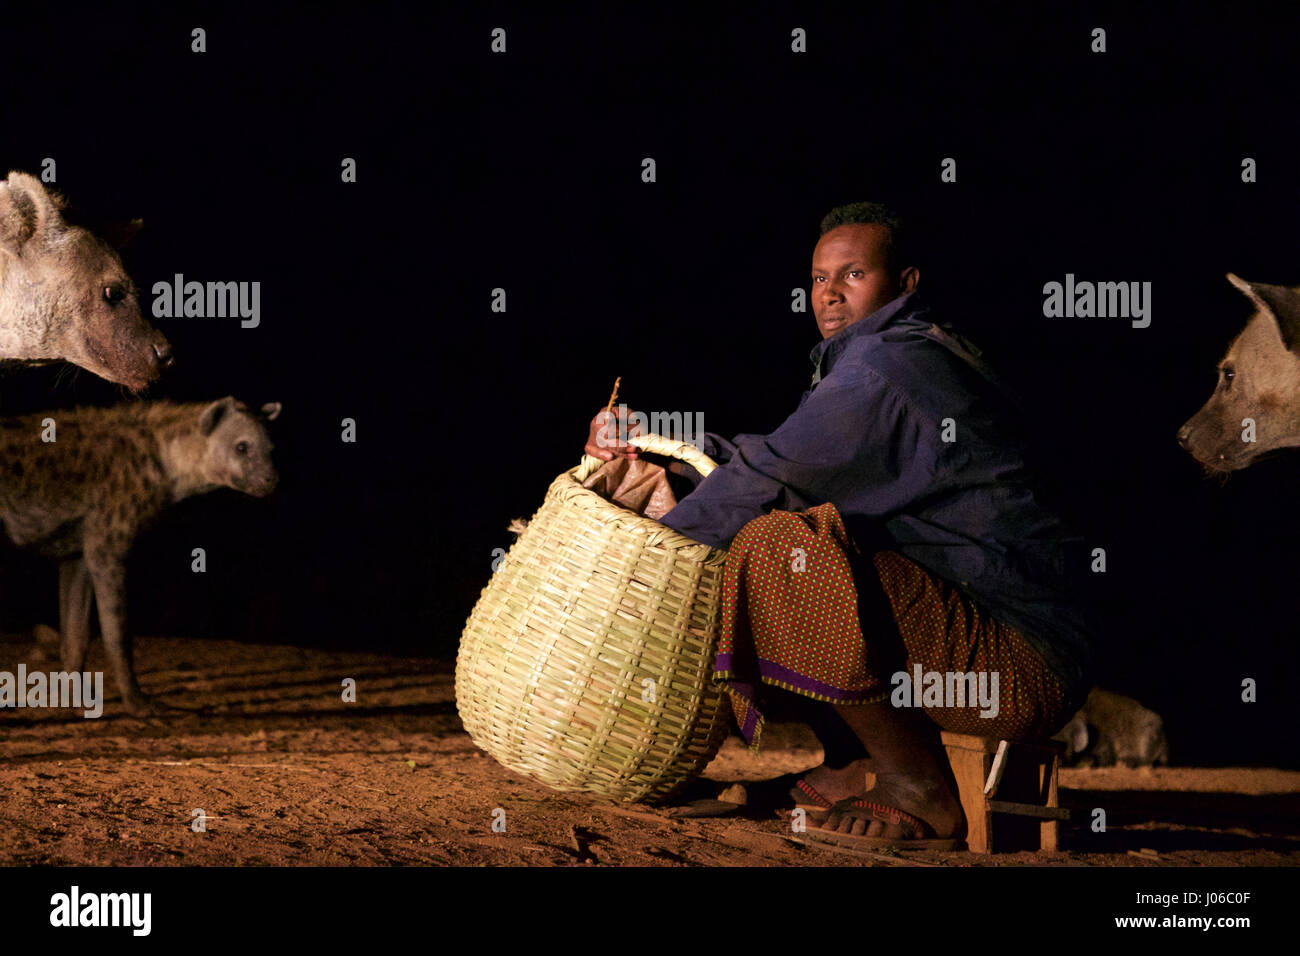 HARAR, Äthiopien: Neue 'Hyäne Man' Abbas Saleh Zubereitung von Speisen für seine Hyäne Freunde. Treffen Sie die unglaubliche Hyäne Mann von Harar, die nun seinen Titel auf seinen Sohn nach dreißig Jahren, am besten mit Freunden einen Clan dieser fleischfressende Tiere vorbei ist. Bilder zeigen einen jungen Erben die Hyäne Mann Titel nach der jahrhundertealten Tradition seines Volkes vor möglichen Angriffen durch Hyänen ruhig füttern diese wilden Radikalfänger schützen. Er ist völlig frei von jeglicher Art von Angst Sie assoziieren würde, wobei dies in der Nähe Afrikas produktivsten Fleischfresser.  Hyänen sind dafür bekannt, Angriff und kil Stockfoto